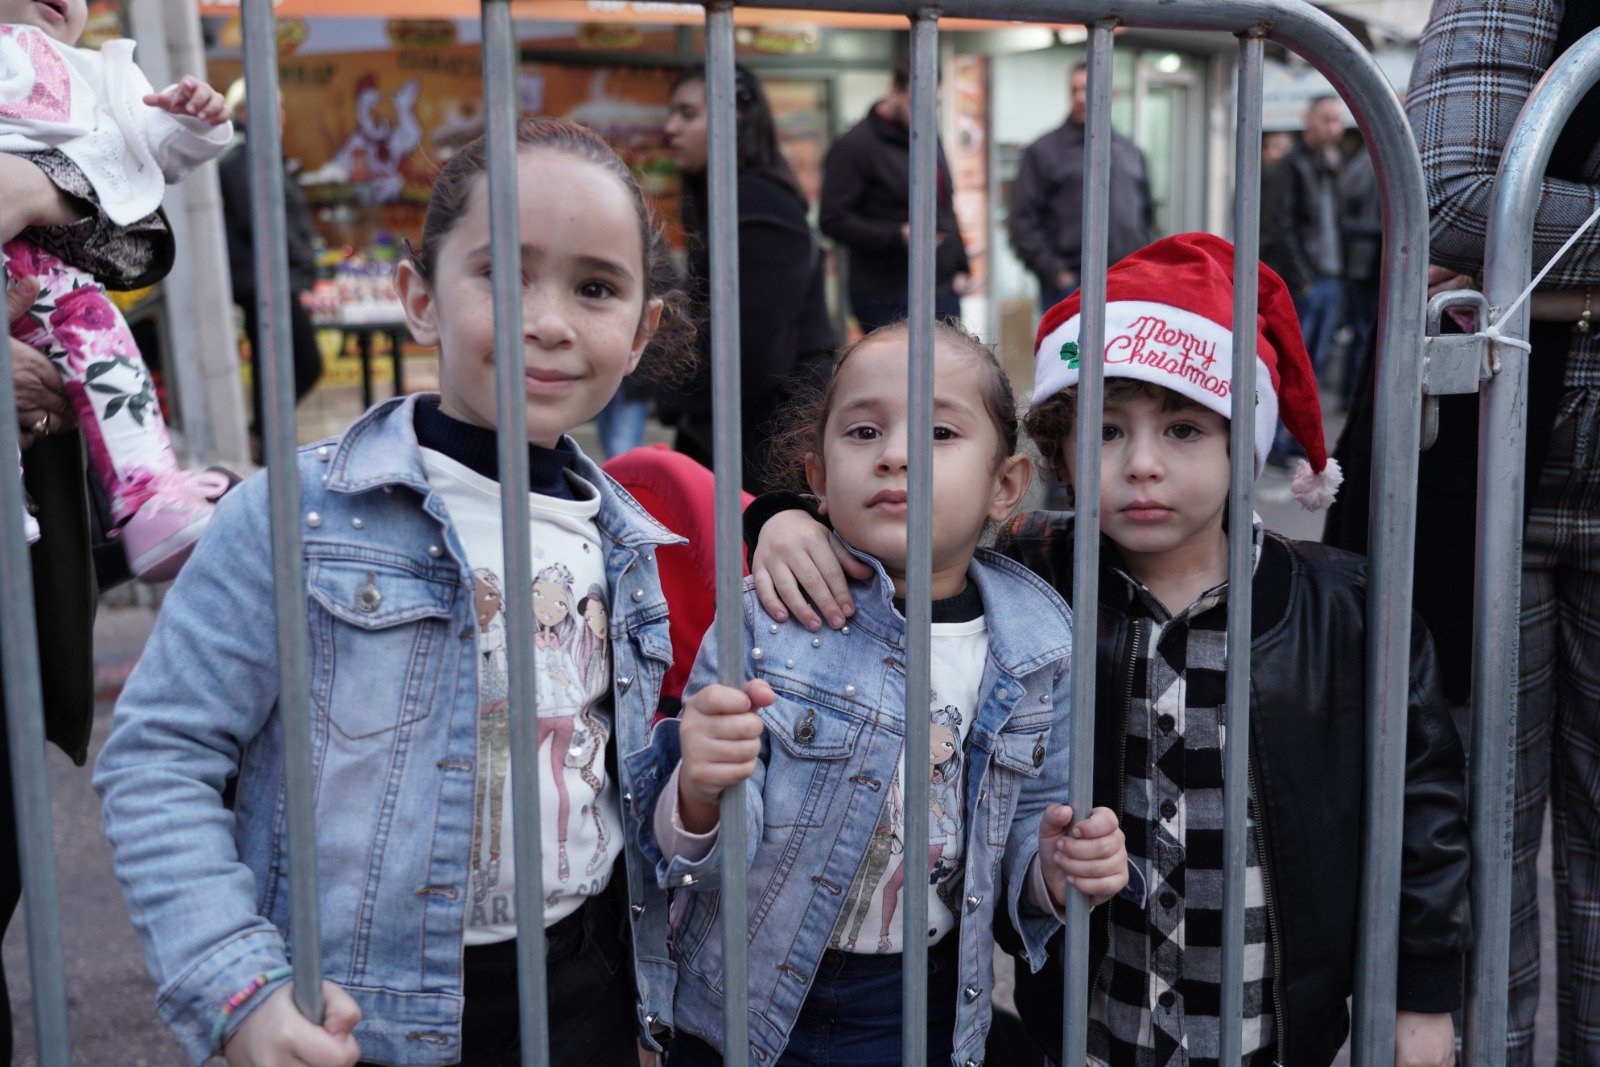 بالصور: "بكرا" يرصد فرحة استقبال الميلاد في الناصرة -251